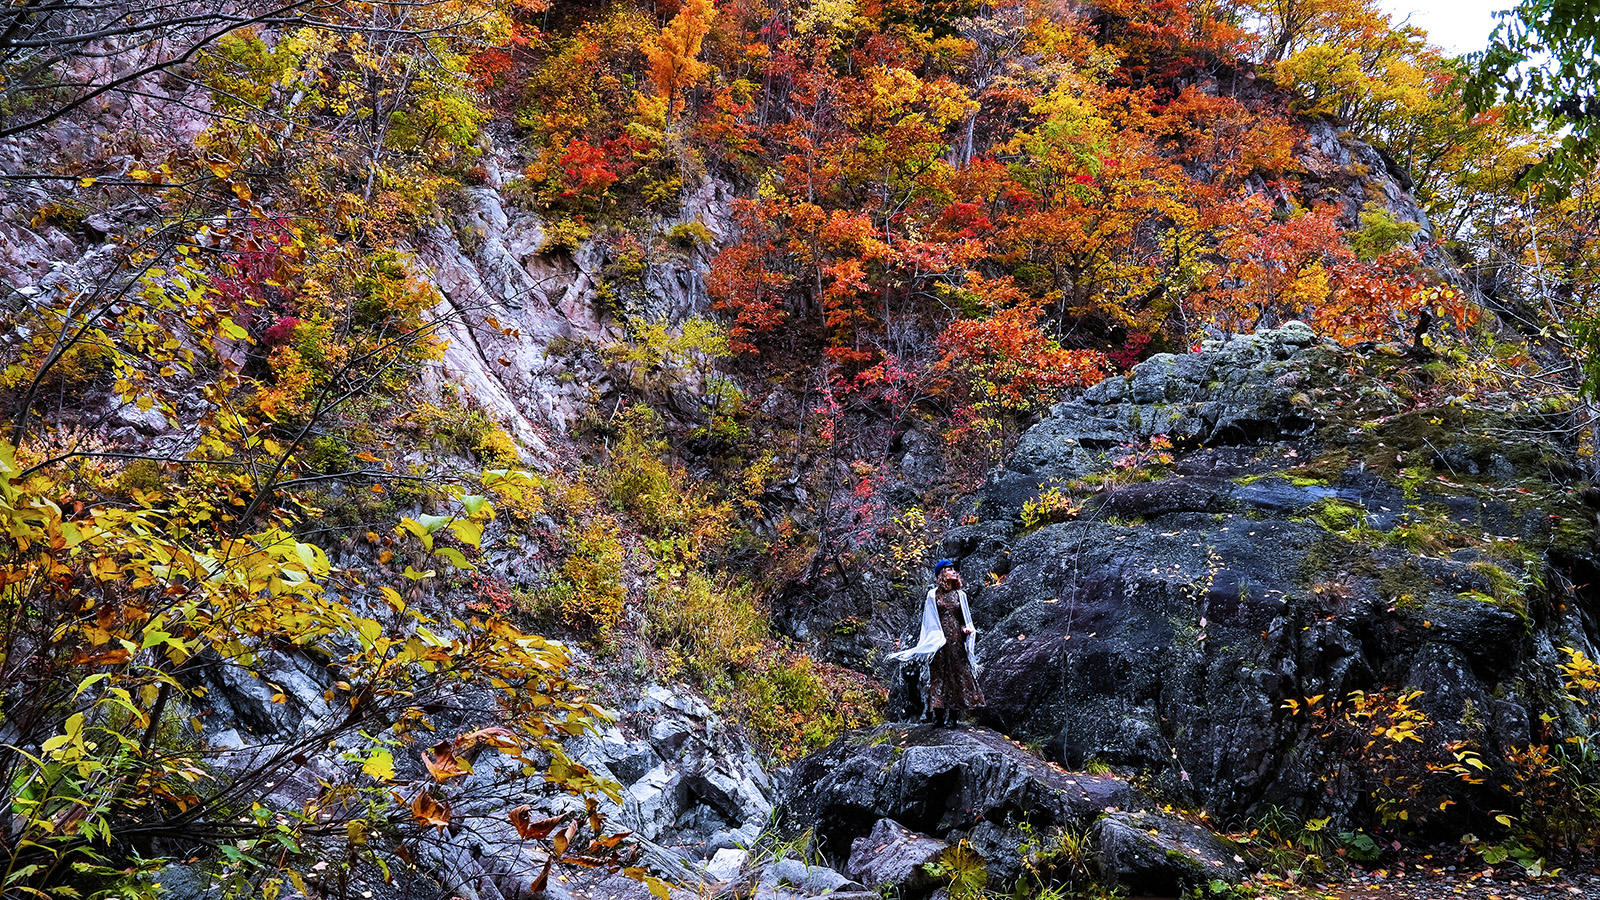 2.鮮やかに染まる紅葉が美しい景観を楽しめる「定山渓温泉街」